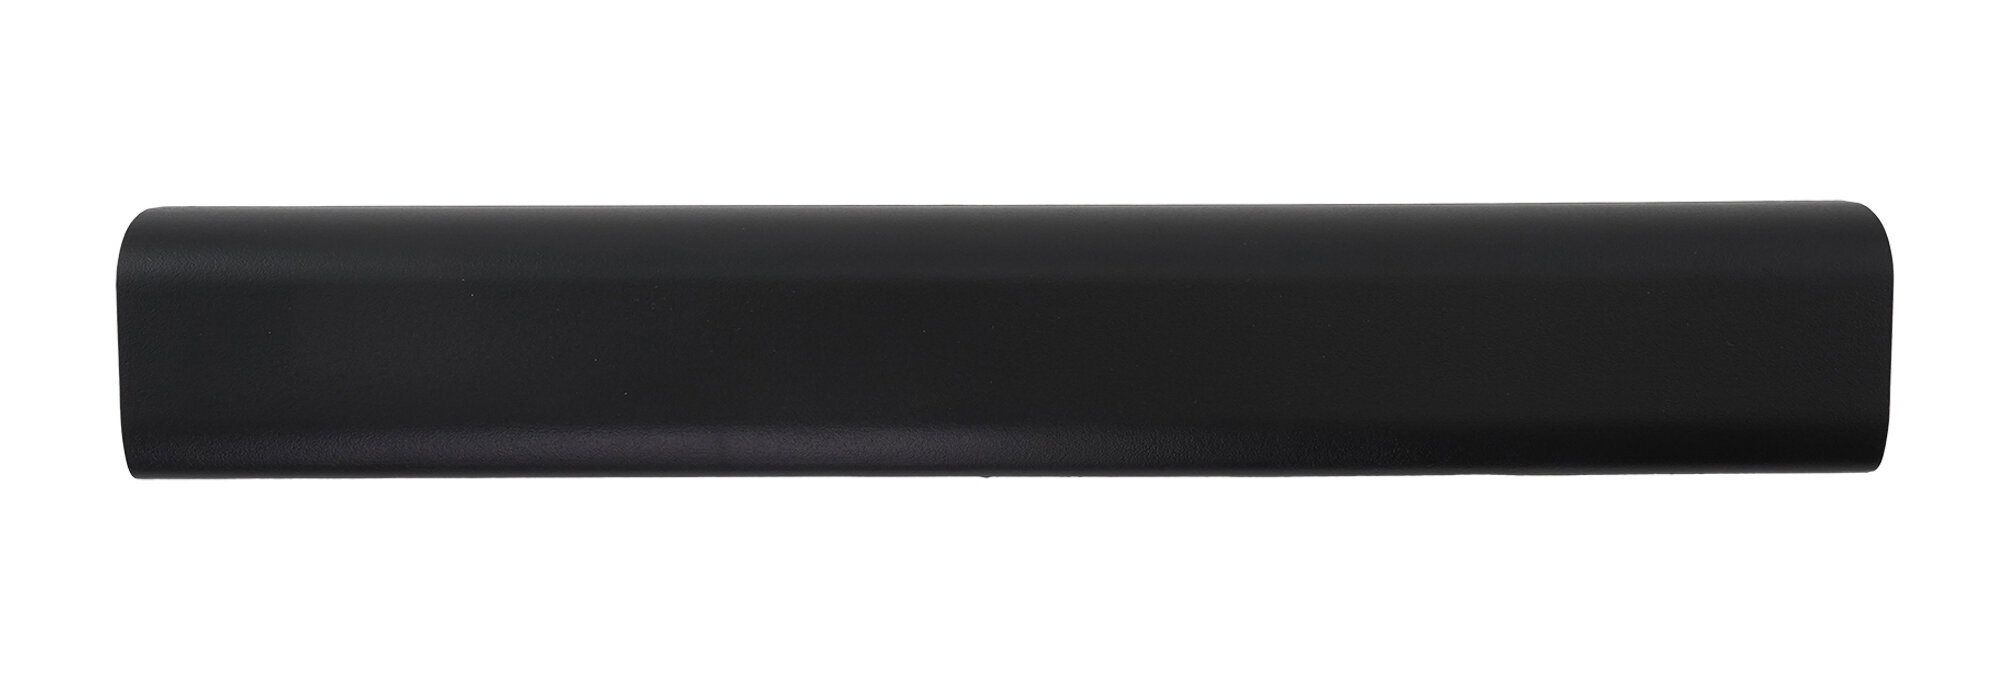 Аккумулятор OEM (совместимый с 0B110-00140000, A31-X401) для ноутбука Asus X501 10.8V 5200mAh черный